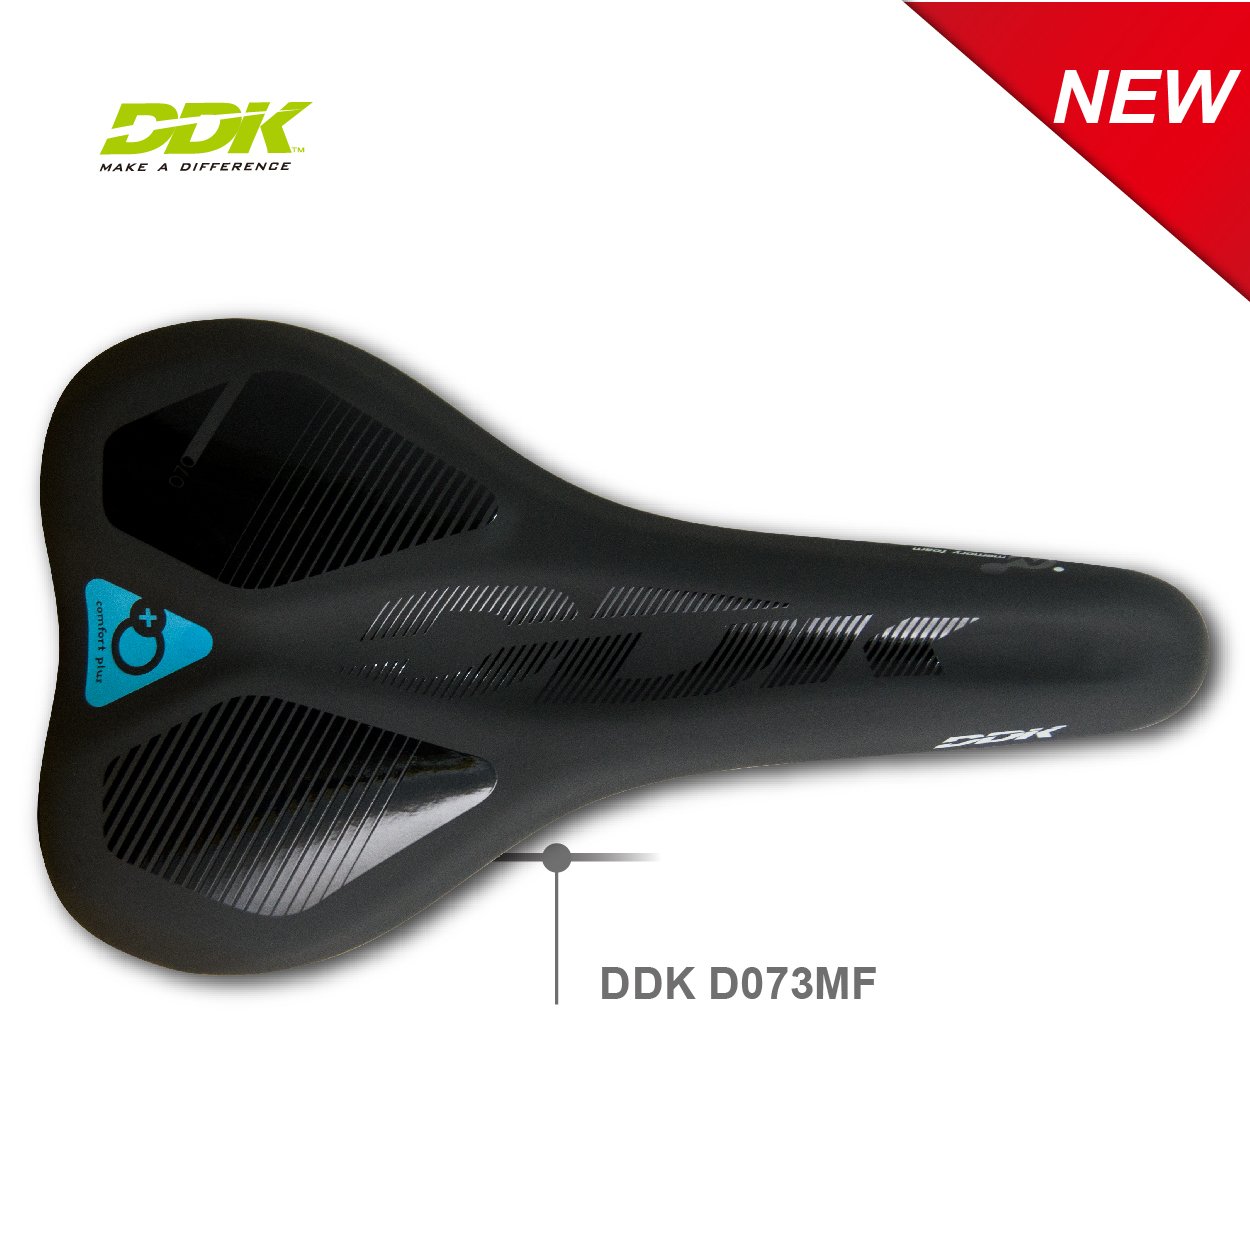 DDK-D073MF